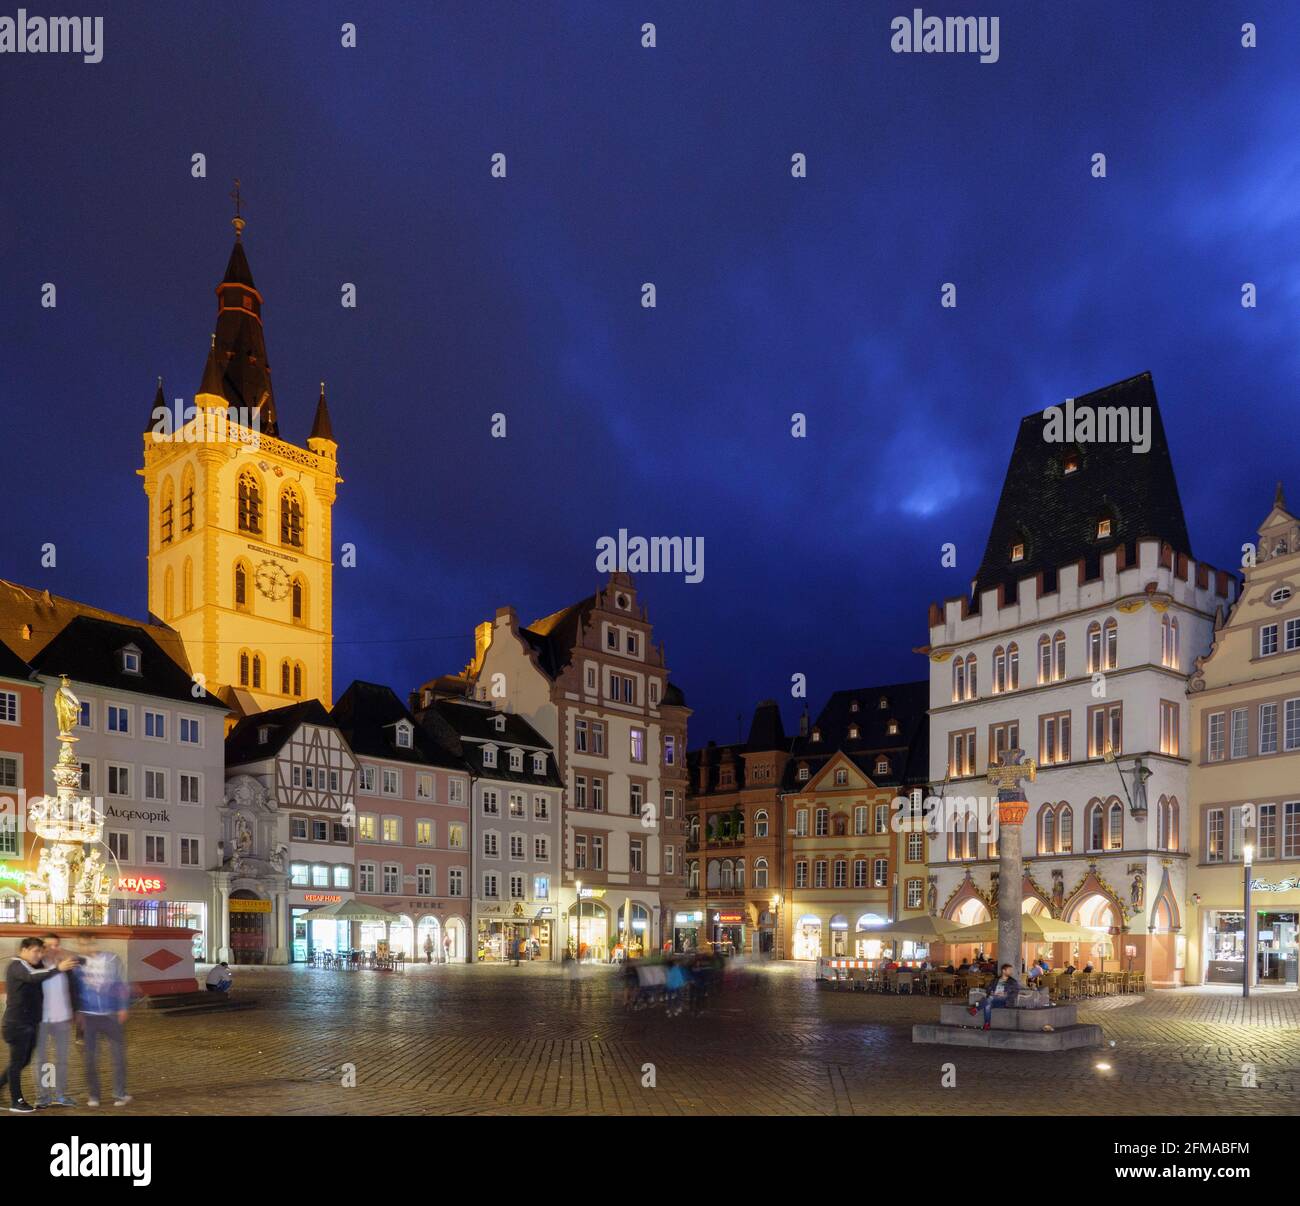 Main market at night, Trier, UNESCO World Heritage, Rhineland-Palatinate, Germany Stock Photo